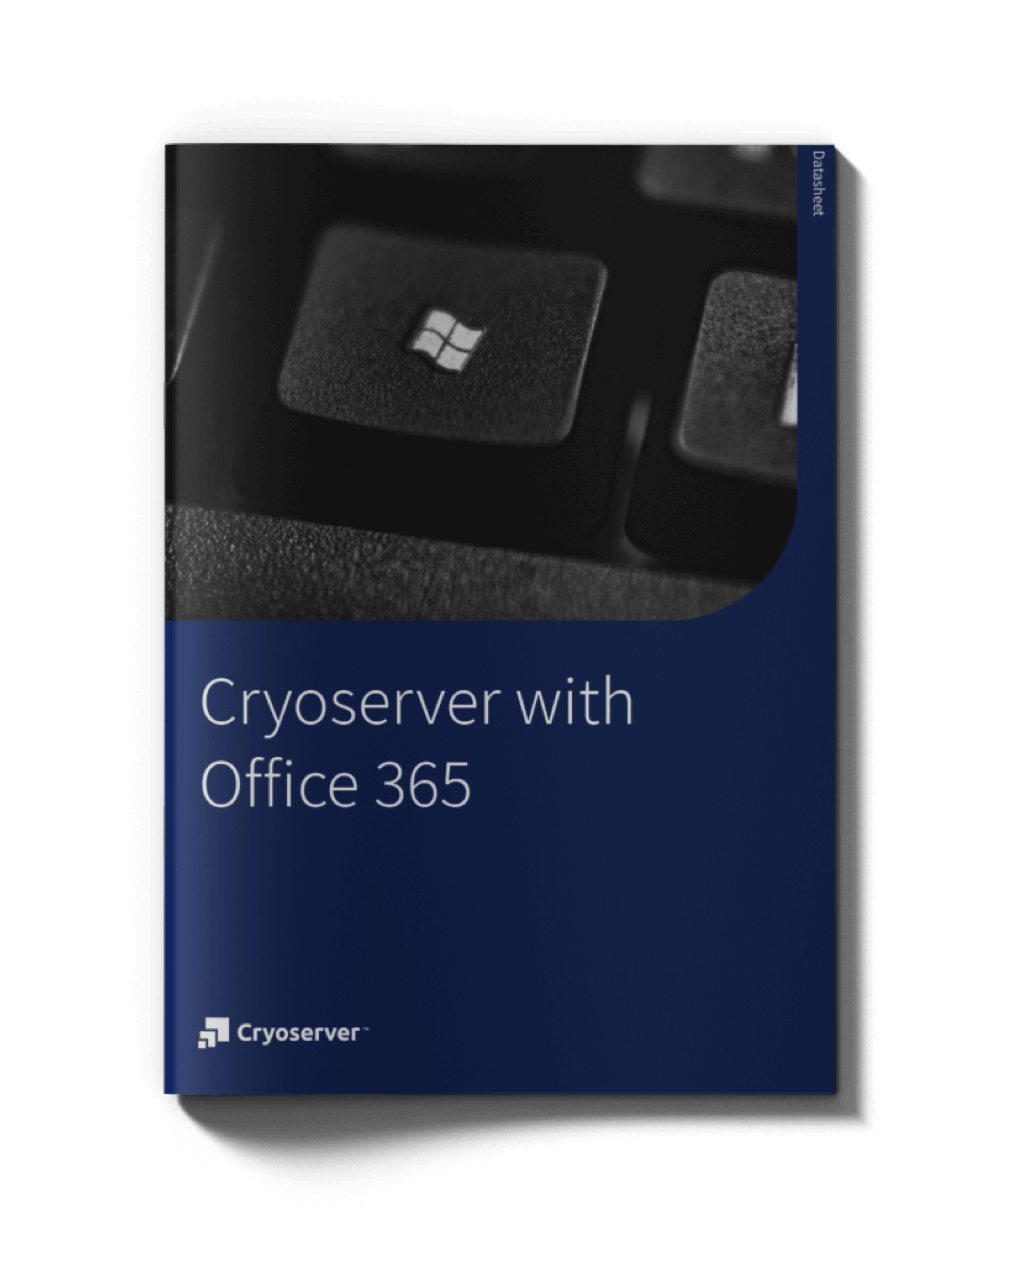 Cryoserver Office365 Datasheet